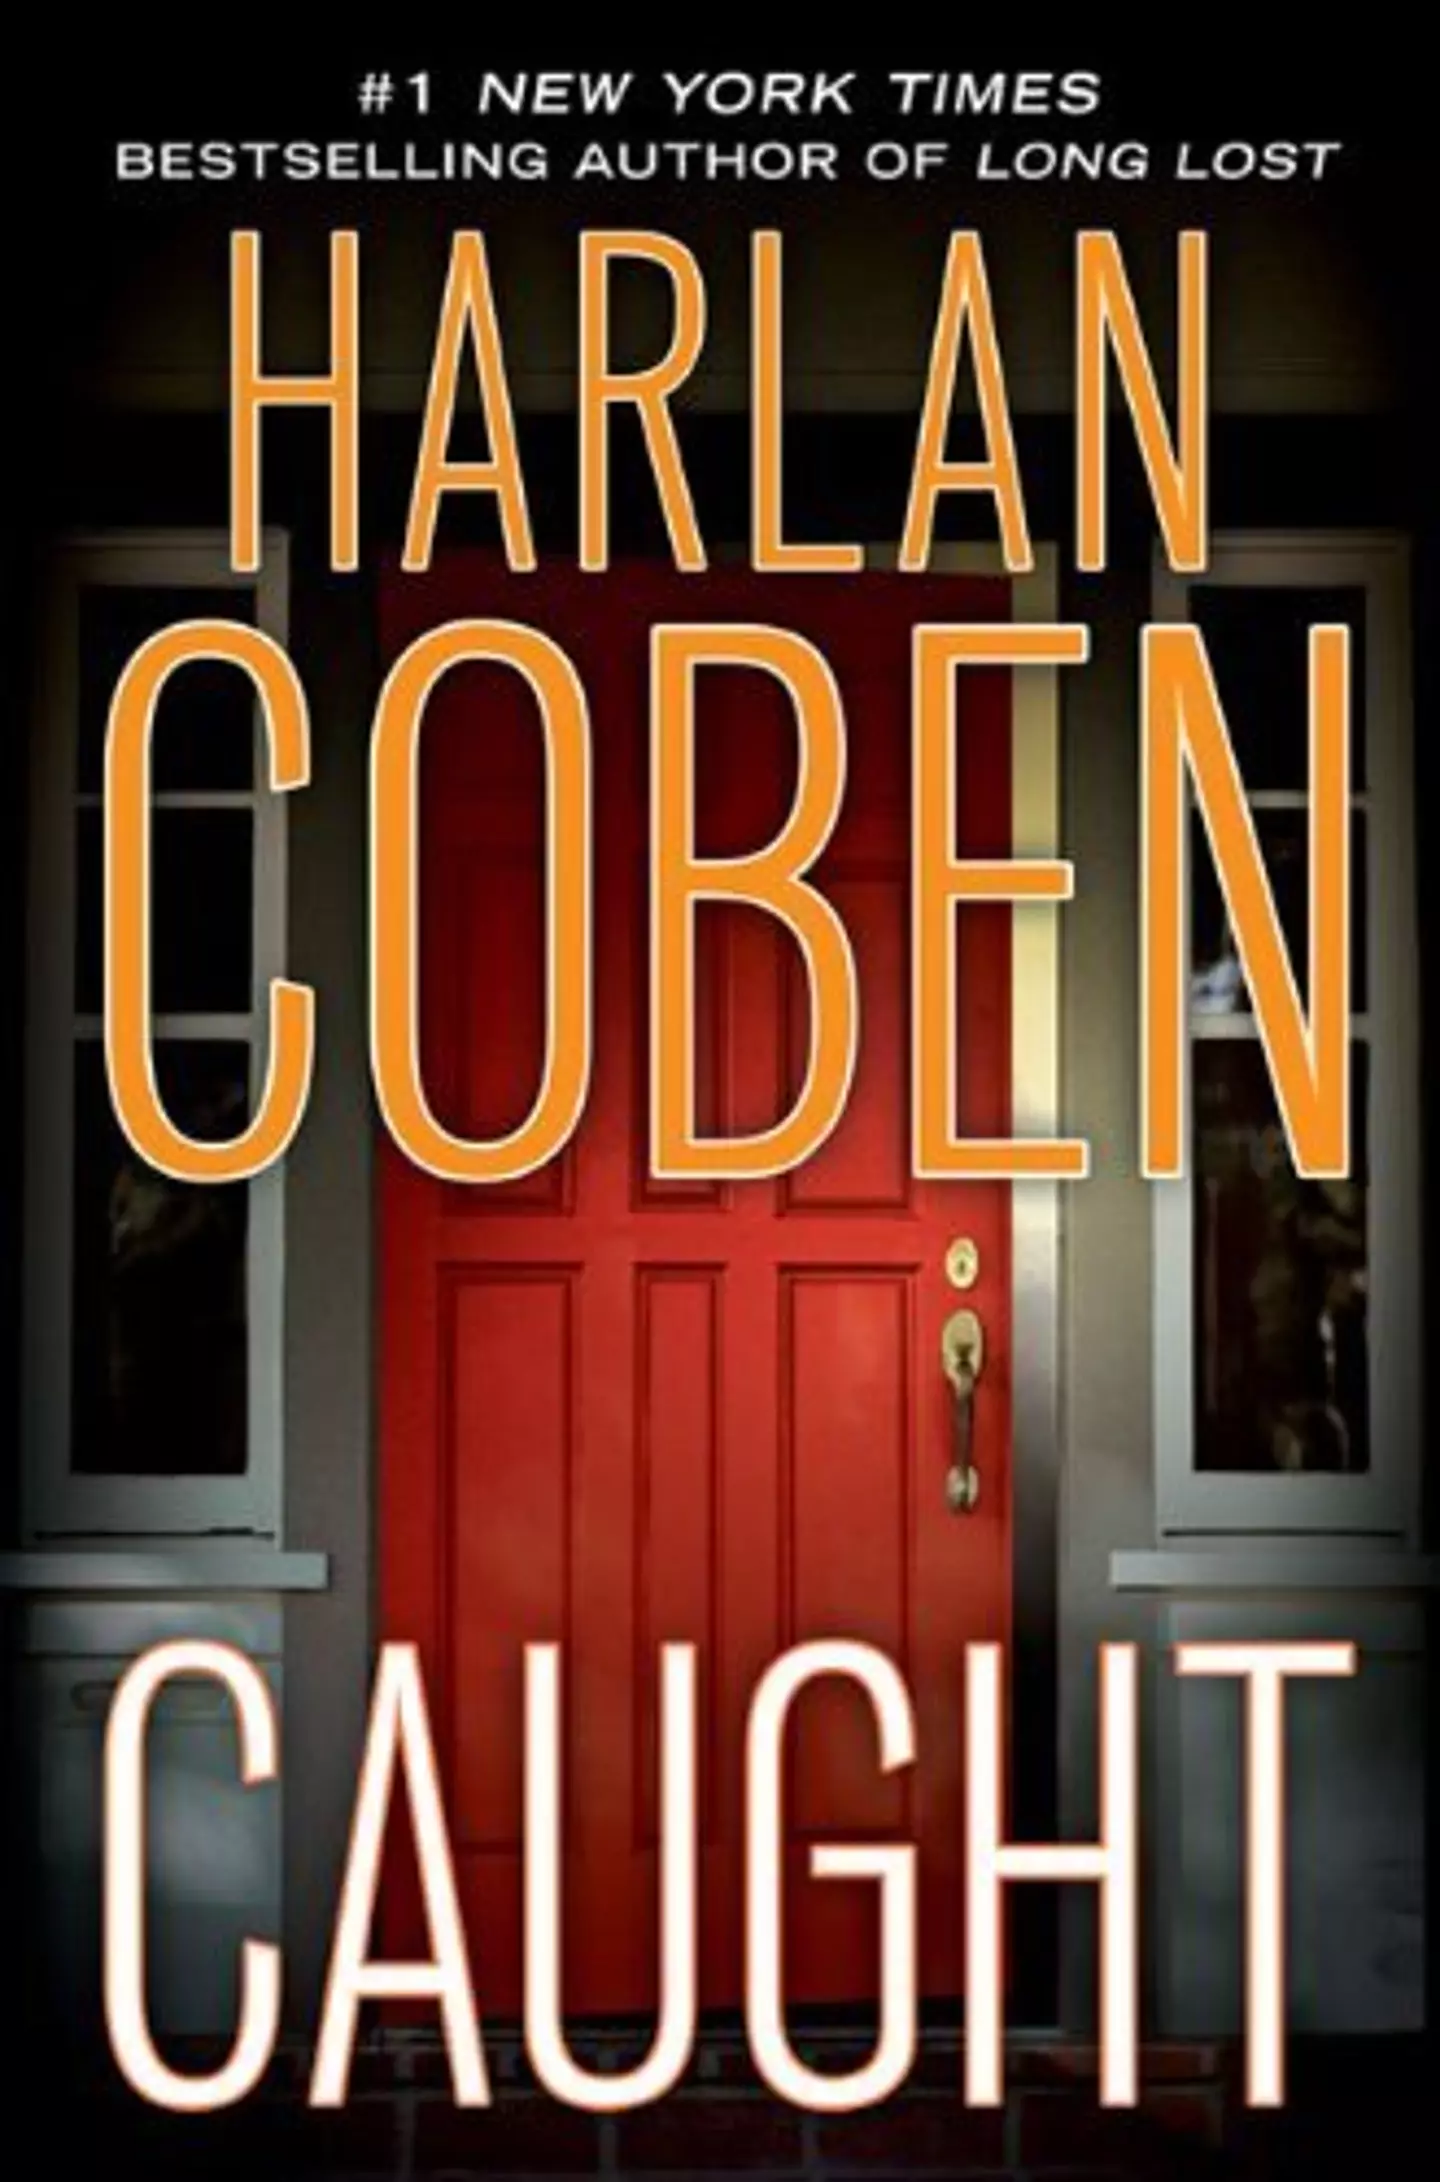 Harlan Coben's Caught